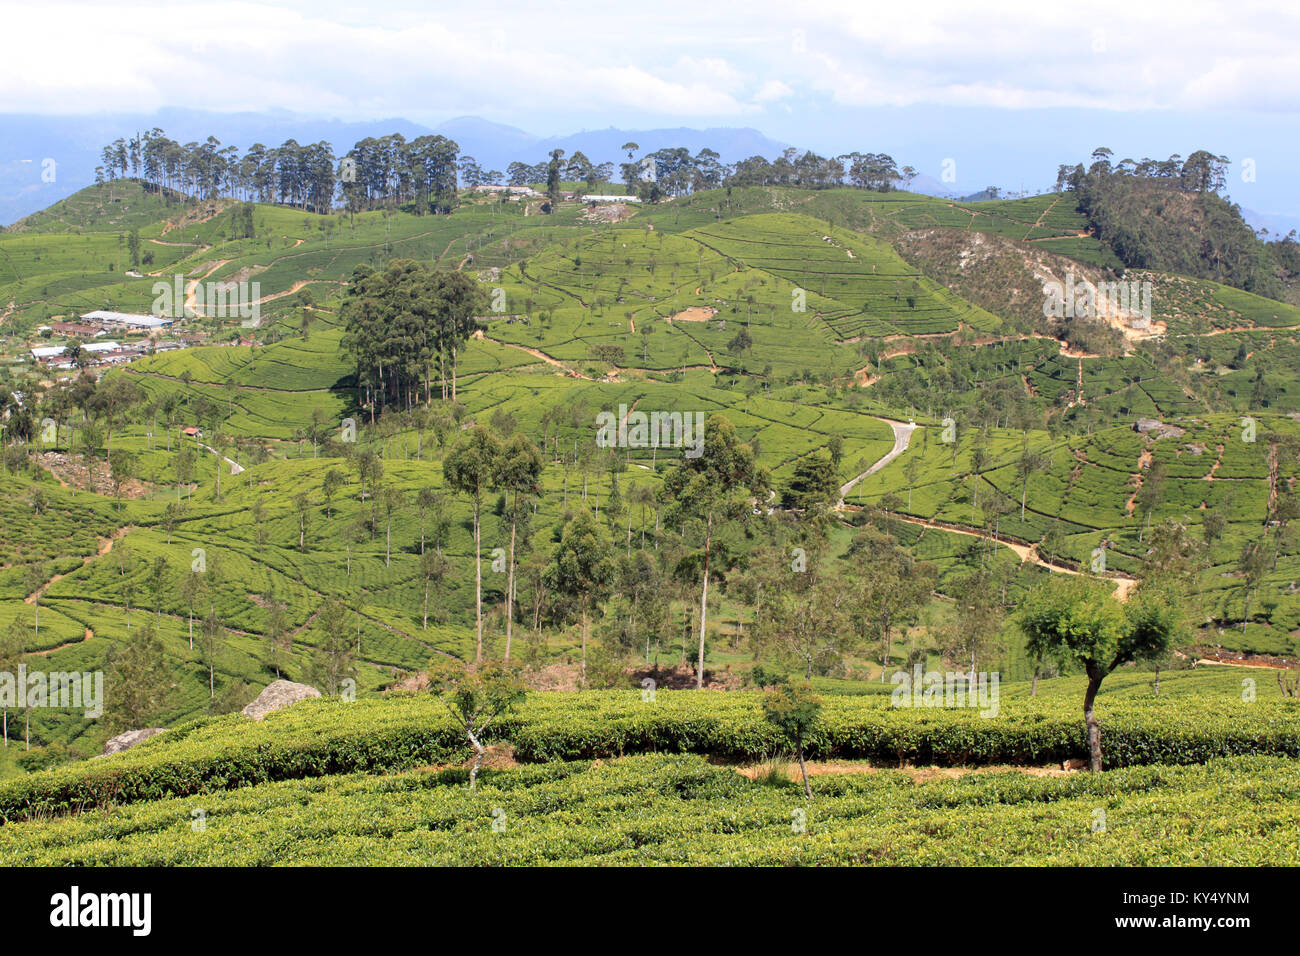 Les plantations de thé sur les collines au Sri Lanka Banque D'Images